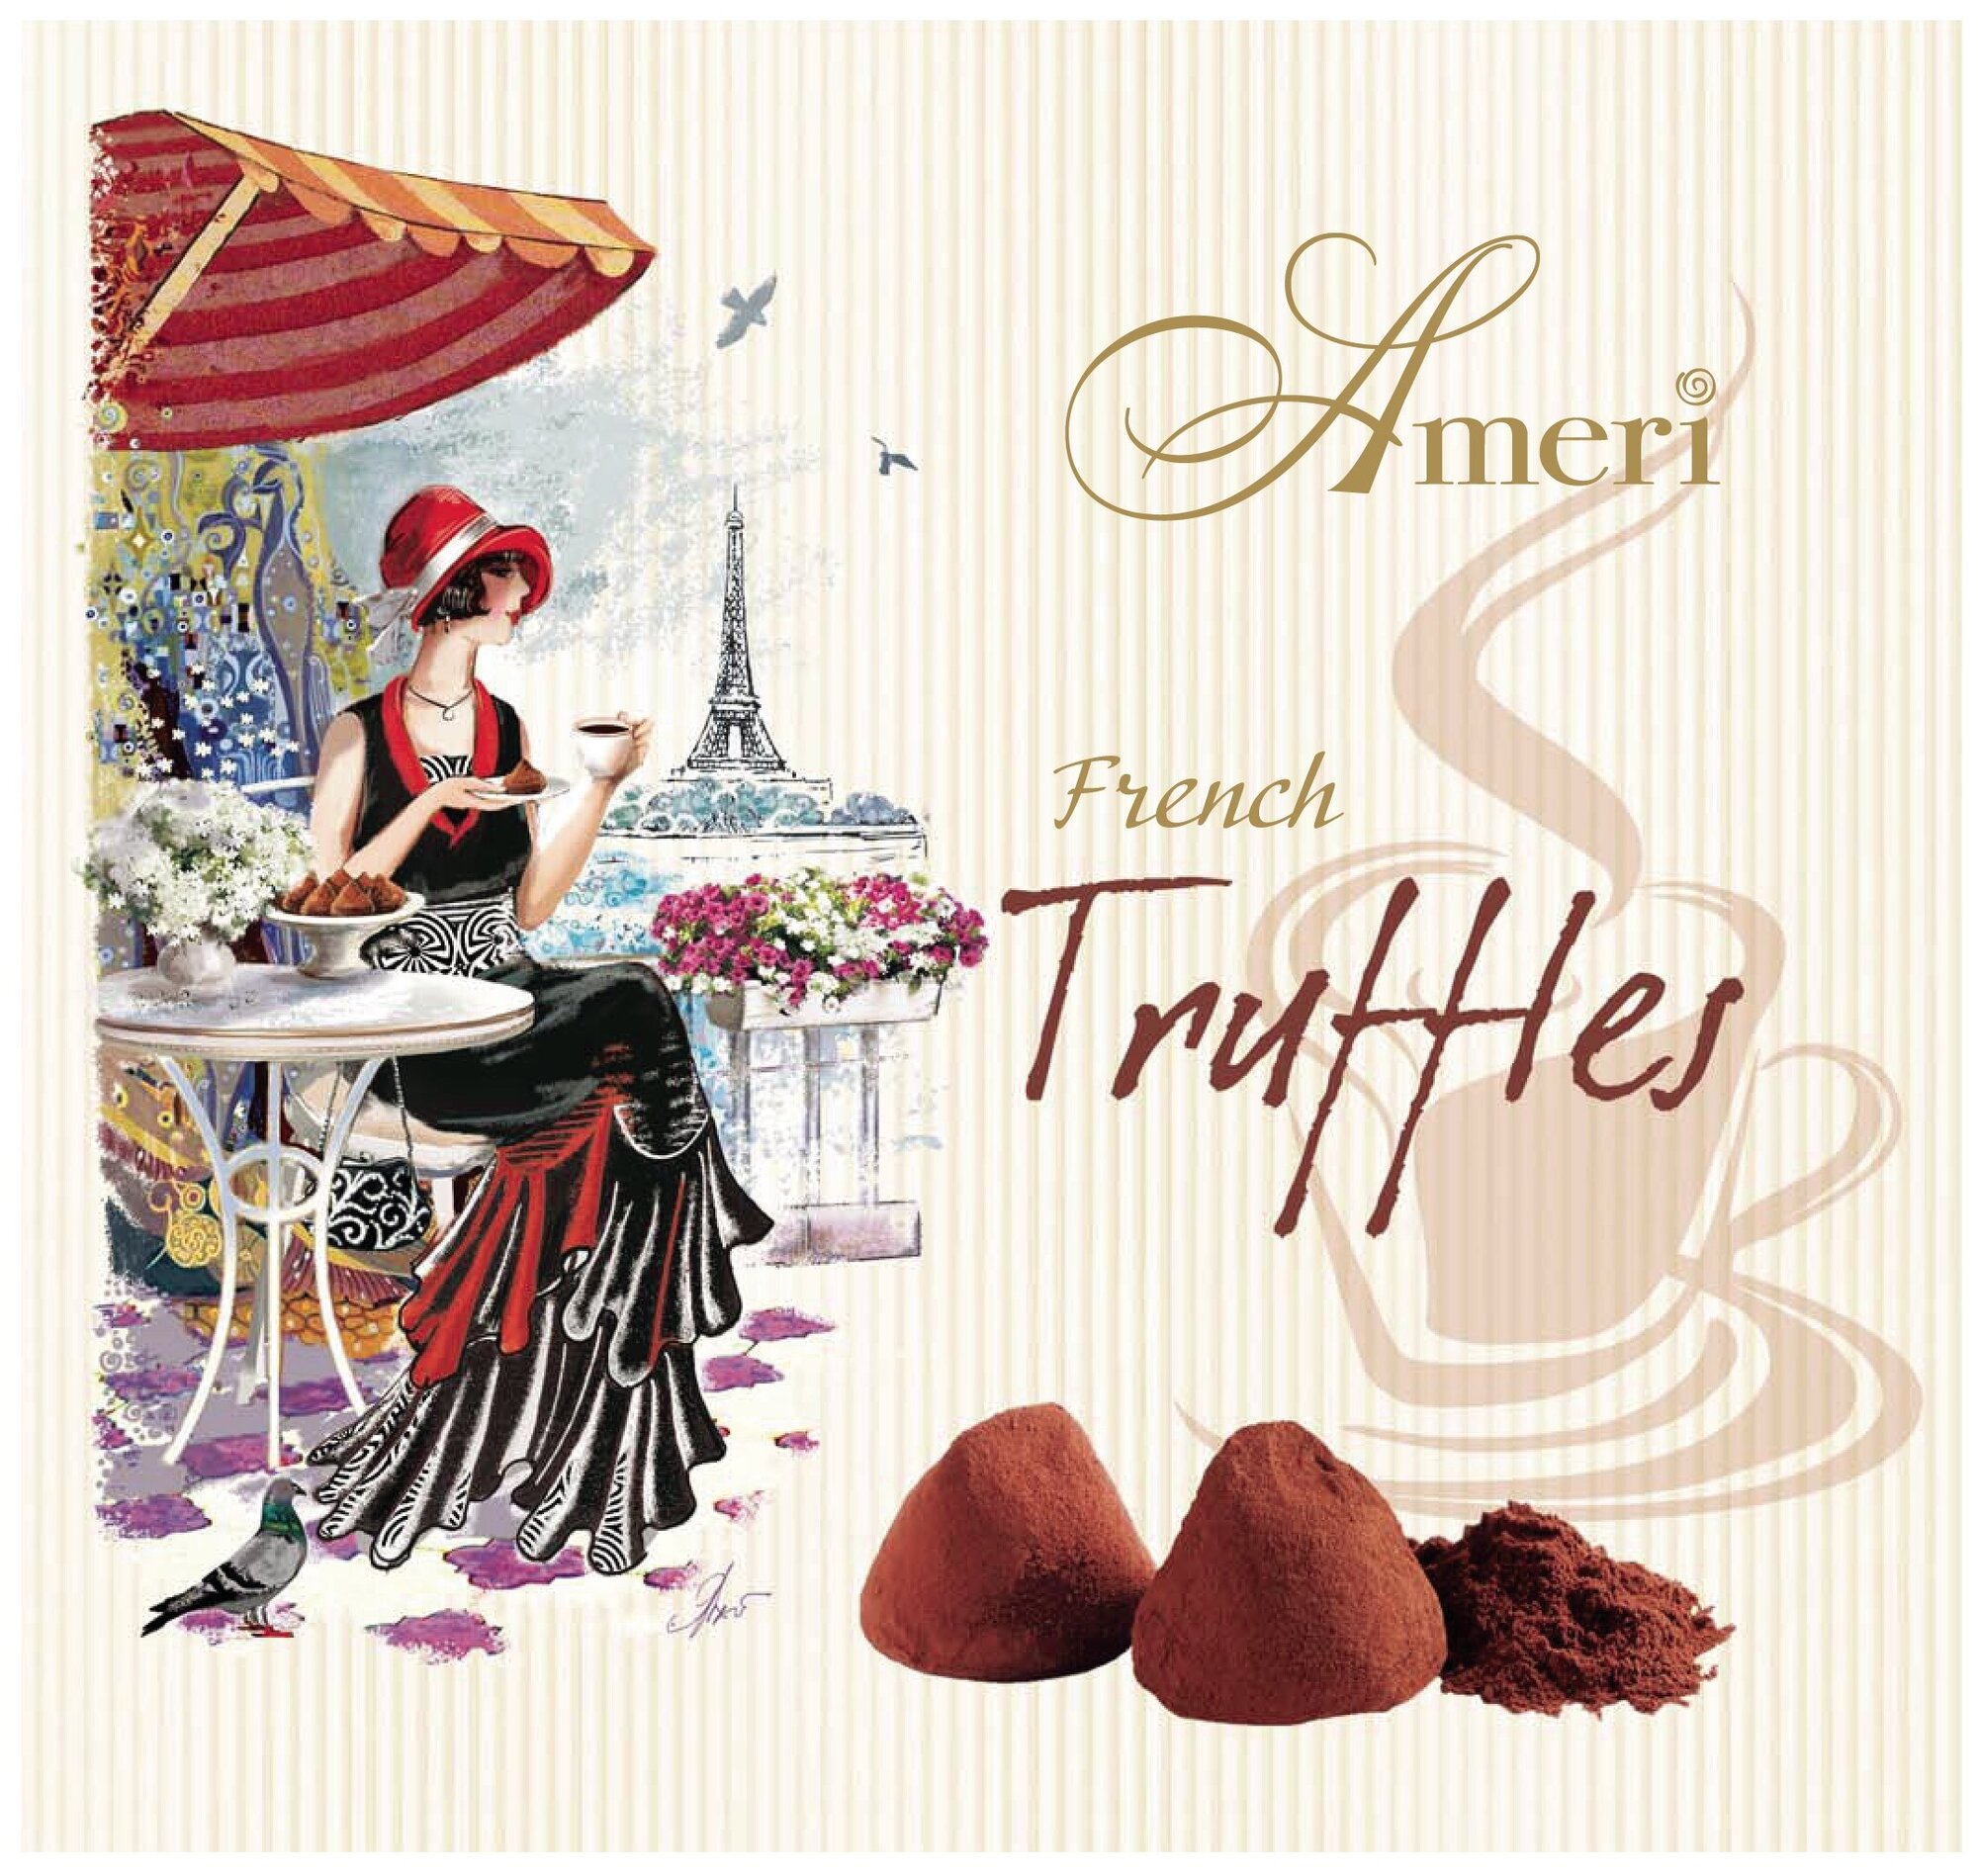 Подарочный набор Ameri Truffles French в Париже Шоколадные конфеты Трюфель классический, 250г